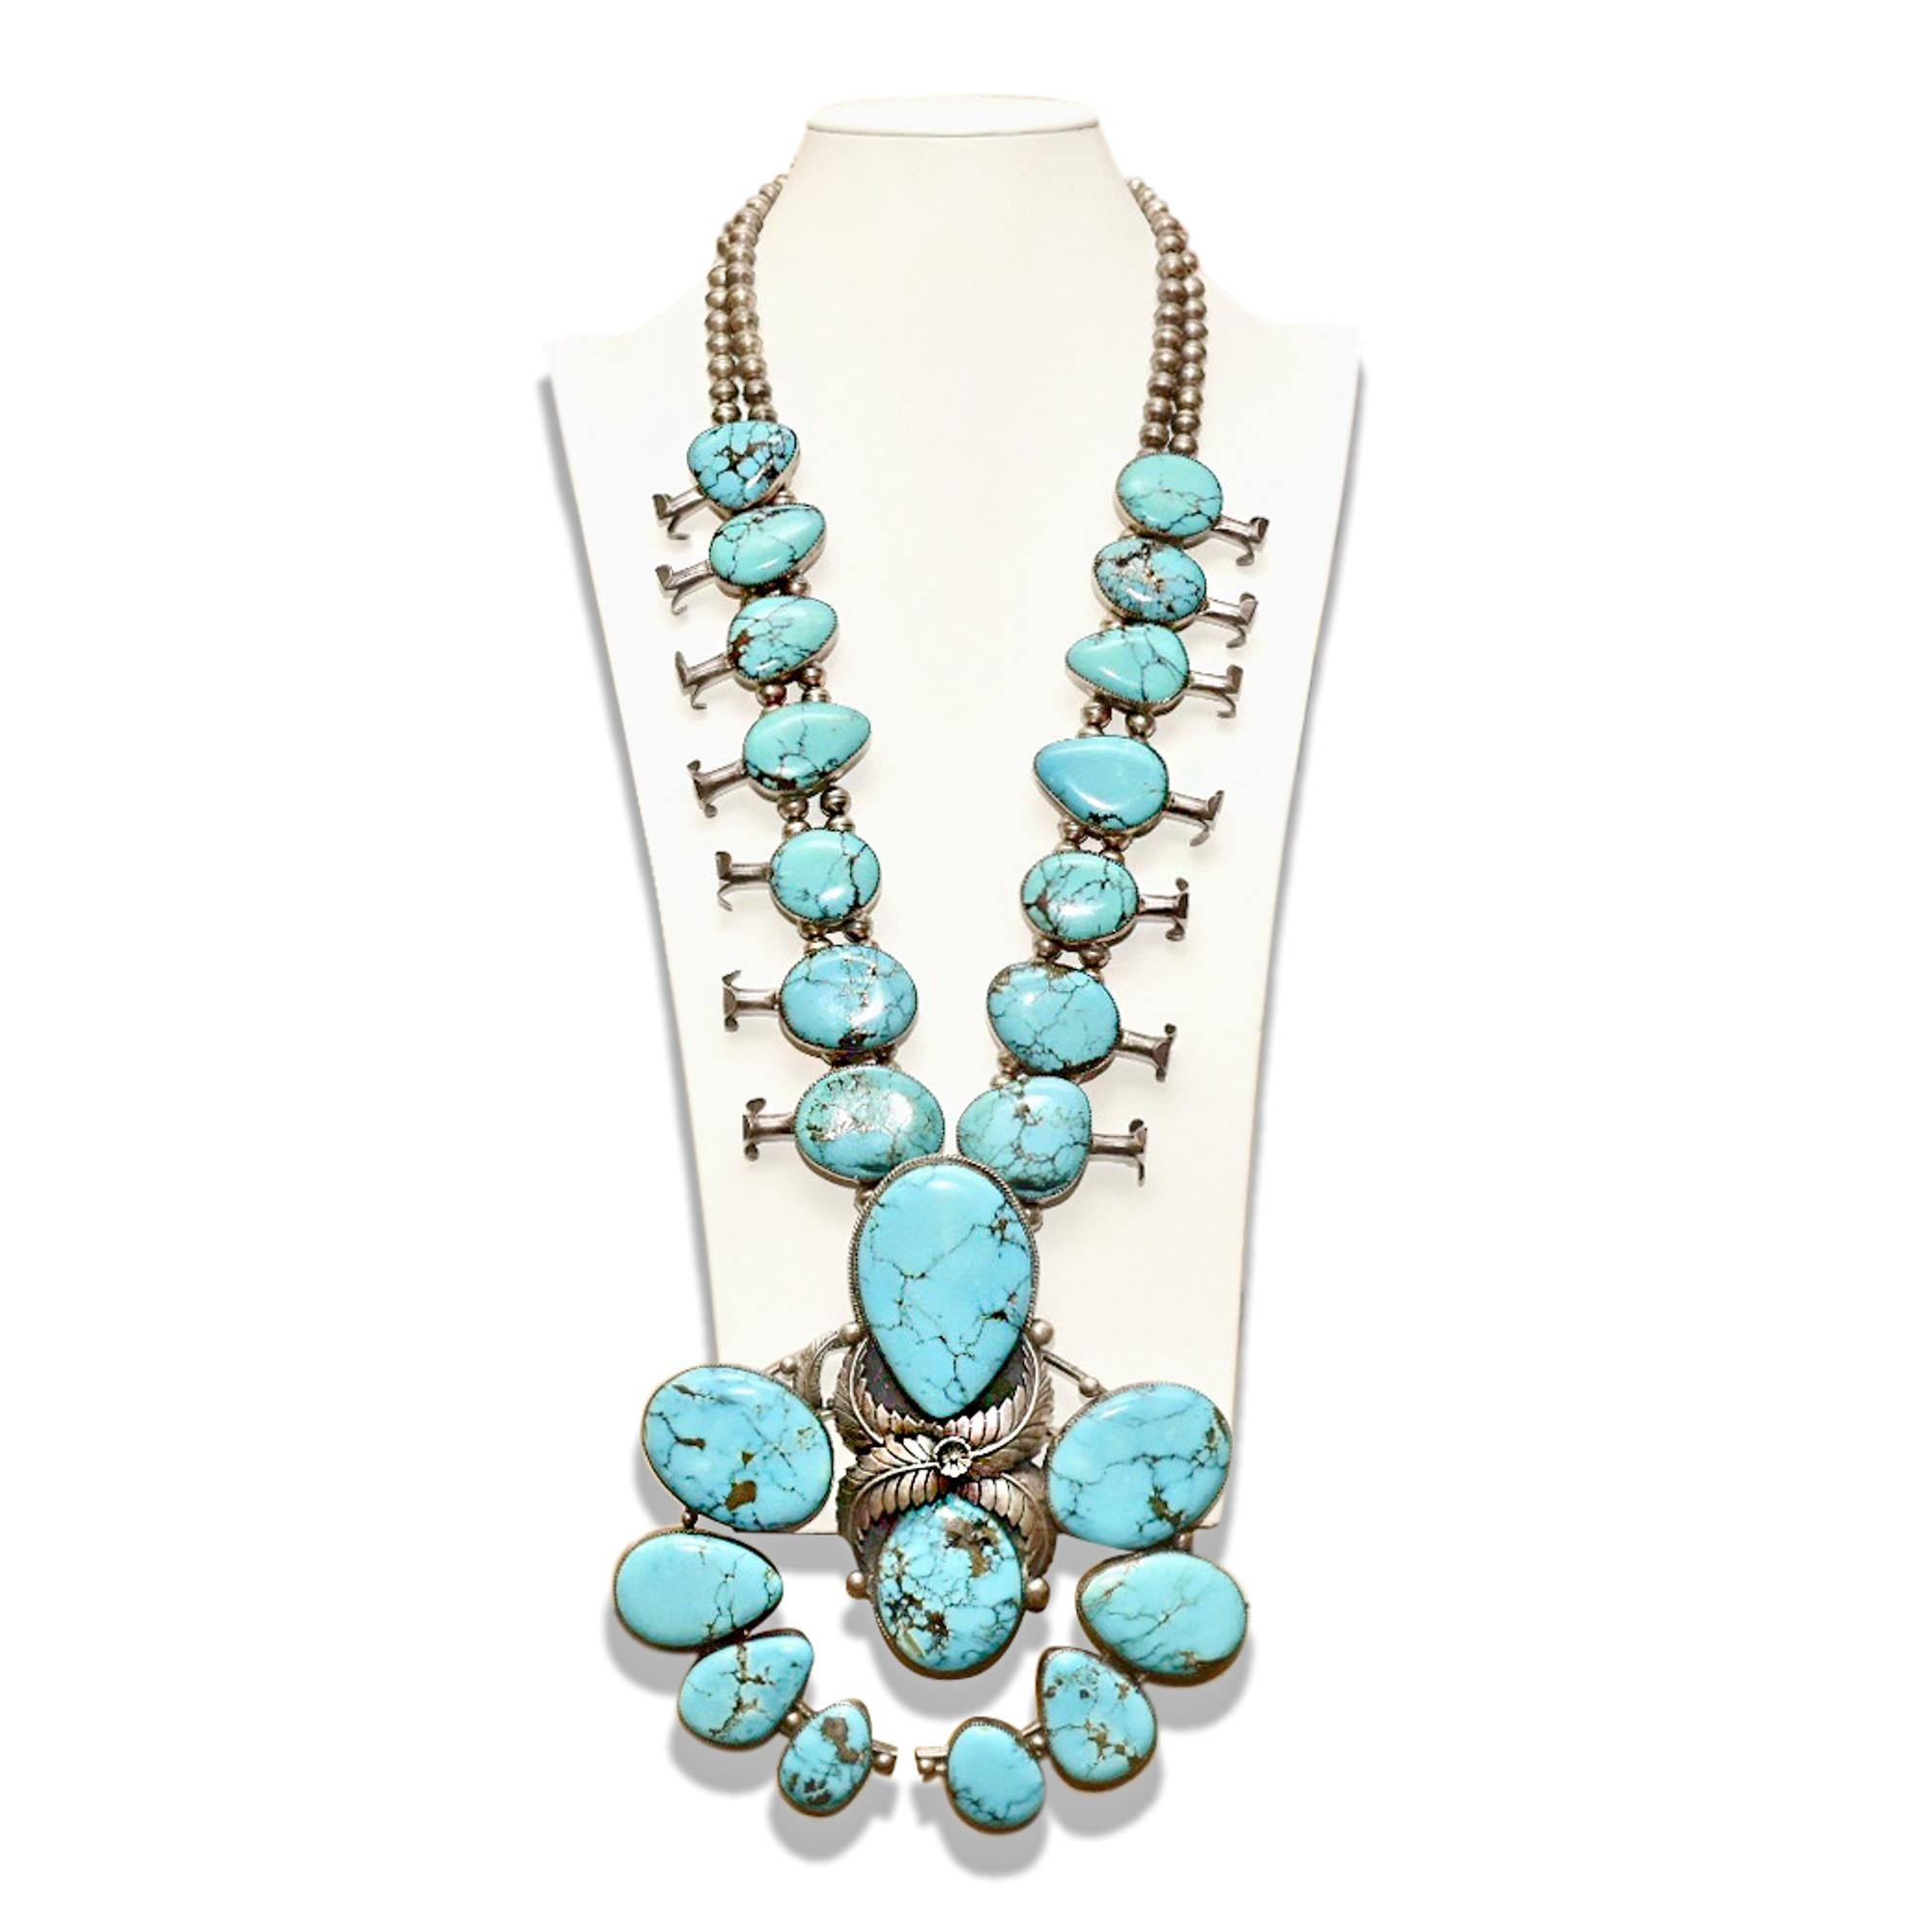 Eine unglaubliche Old Pawn Native American Squash Blossom Halskette mit über 20 natürlichen blauen Türkissteinen. Diese Halskette von überwältigender Größe und Schönheit wurde wahrscheinlich für ein feierliches Powwow entworfen und sieht aus wie ein